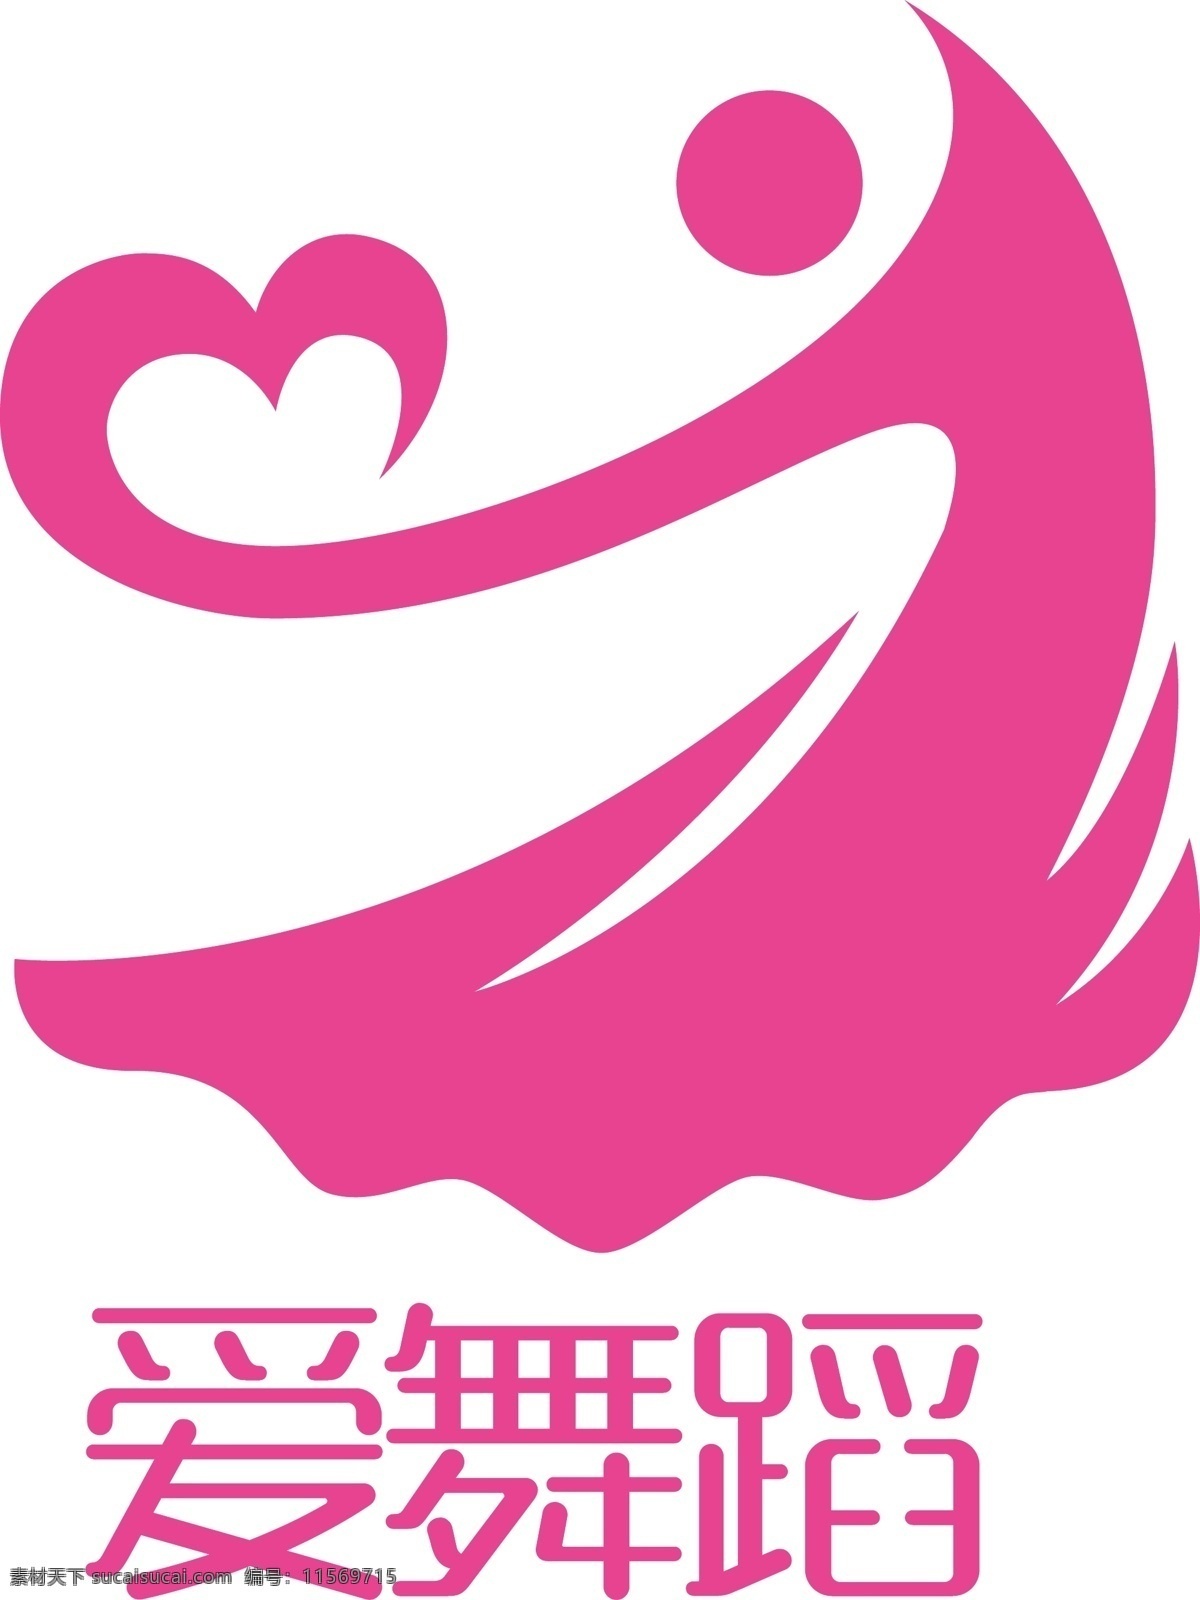 简约 舞蹈 矢量 logo 舞蹈广告 标志 企业标志 舞蹈标志 舞蹈logo 减肥logo logo设计